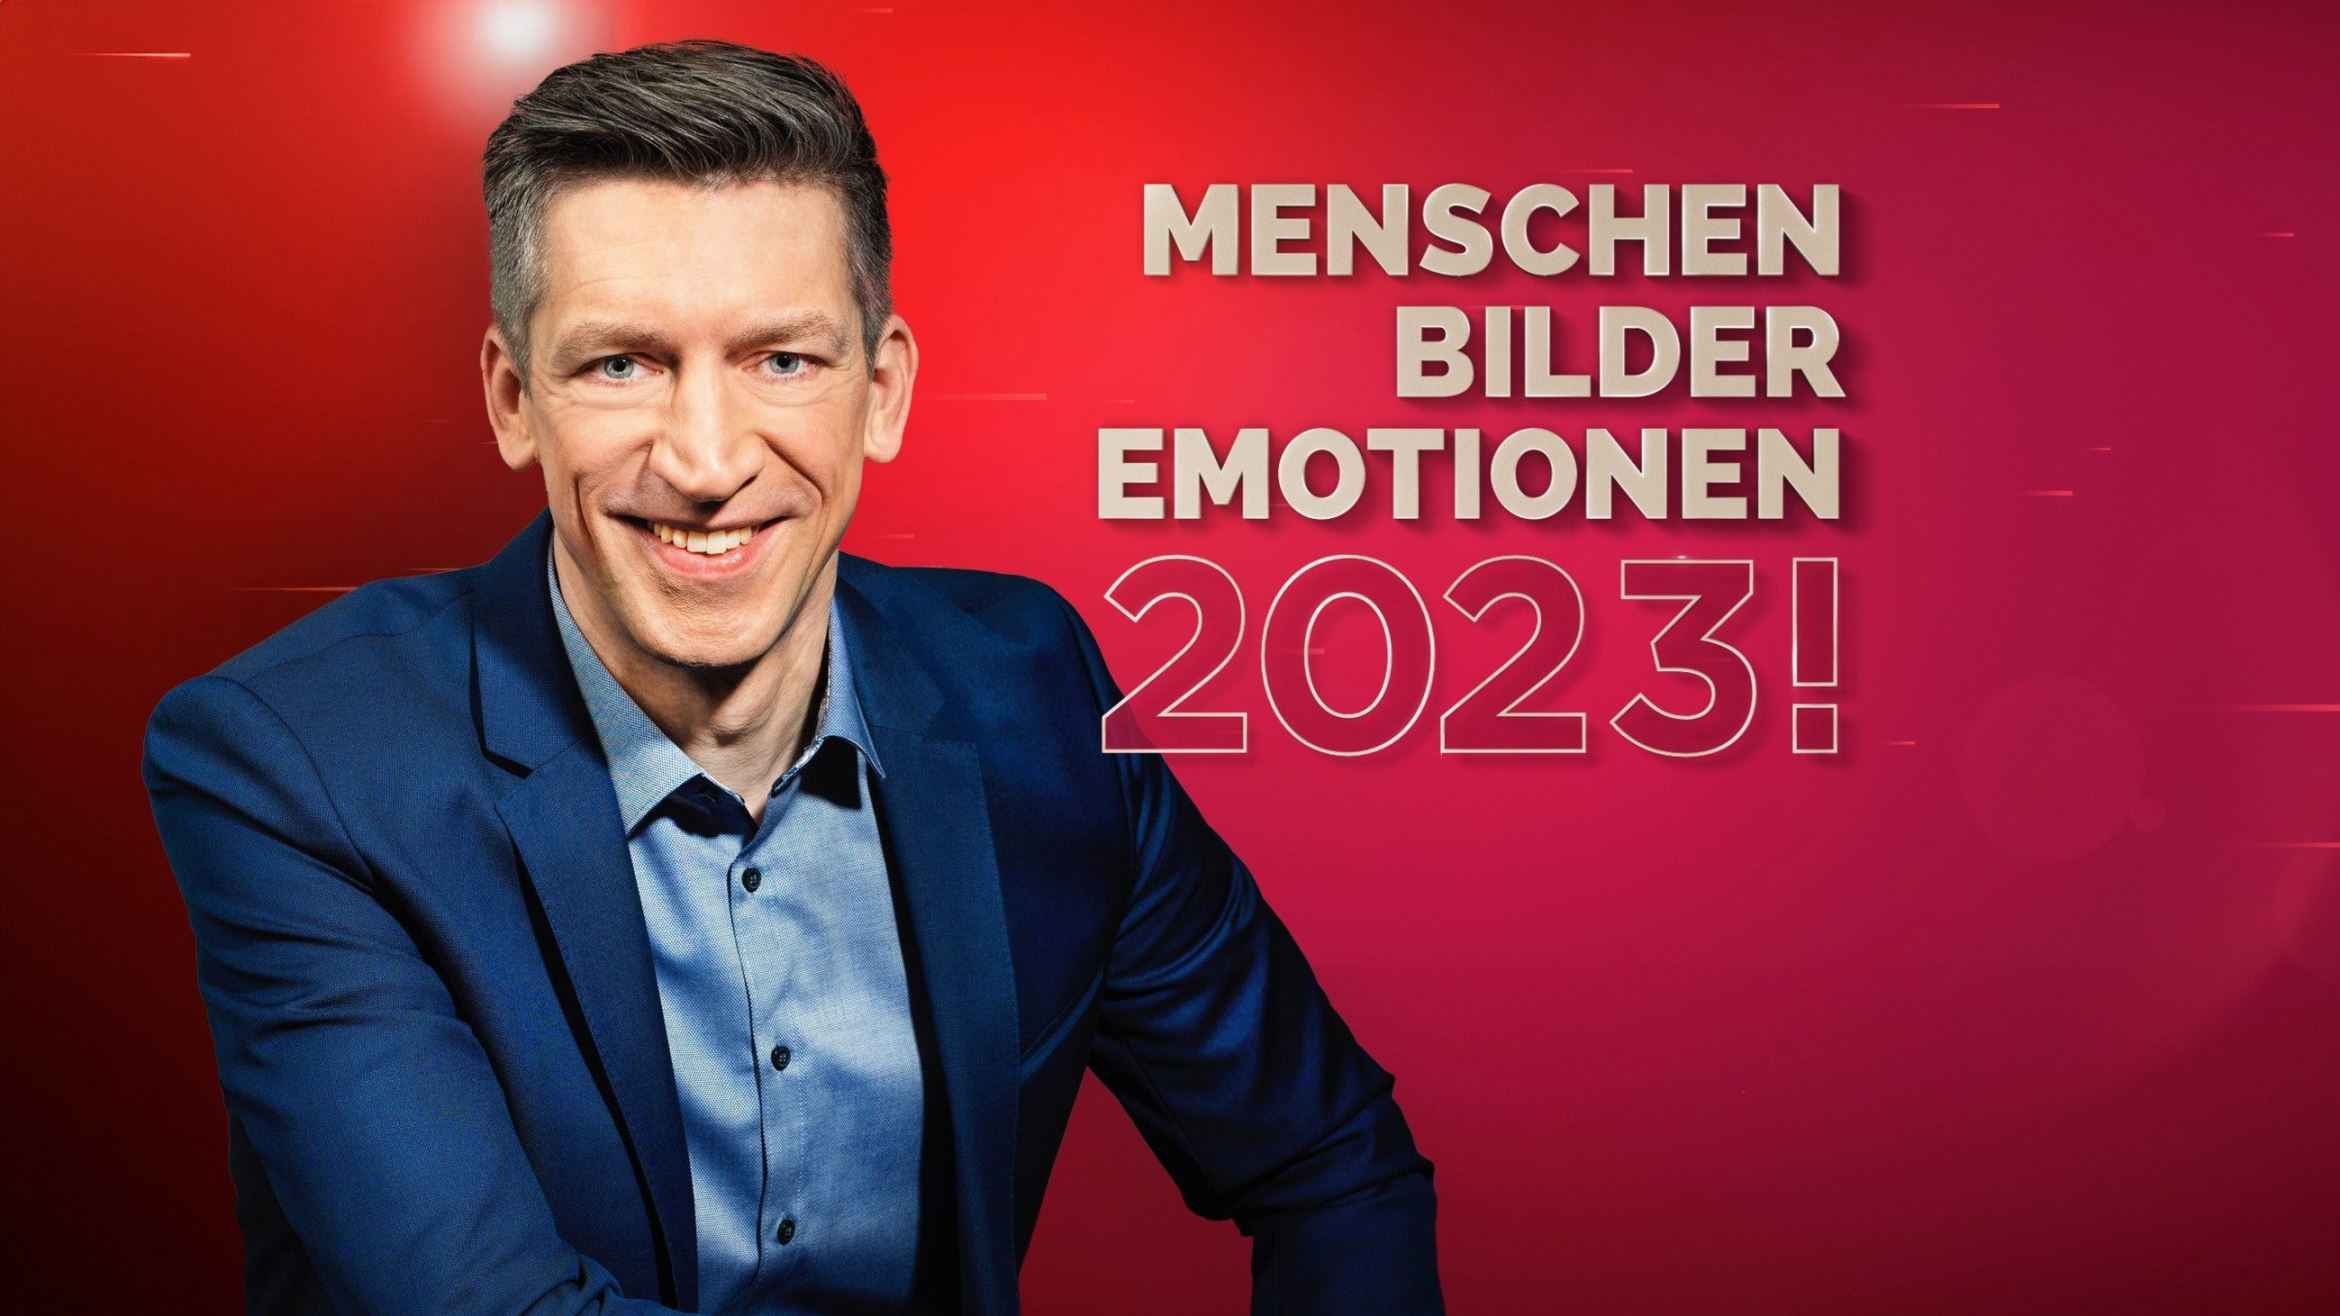 Hallaschka holt bessere RTL-Jahresrückblicks-Marktanteile als Gottschalk und zu Guttenberg vor einem Jahr